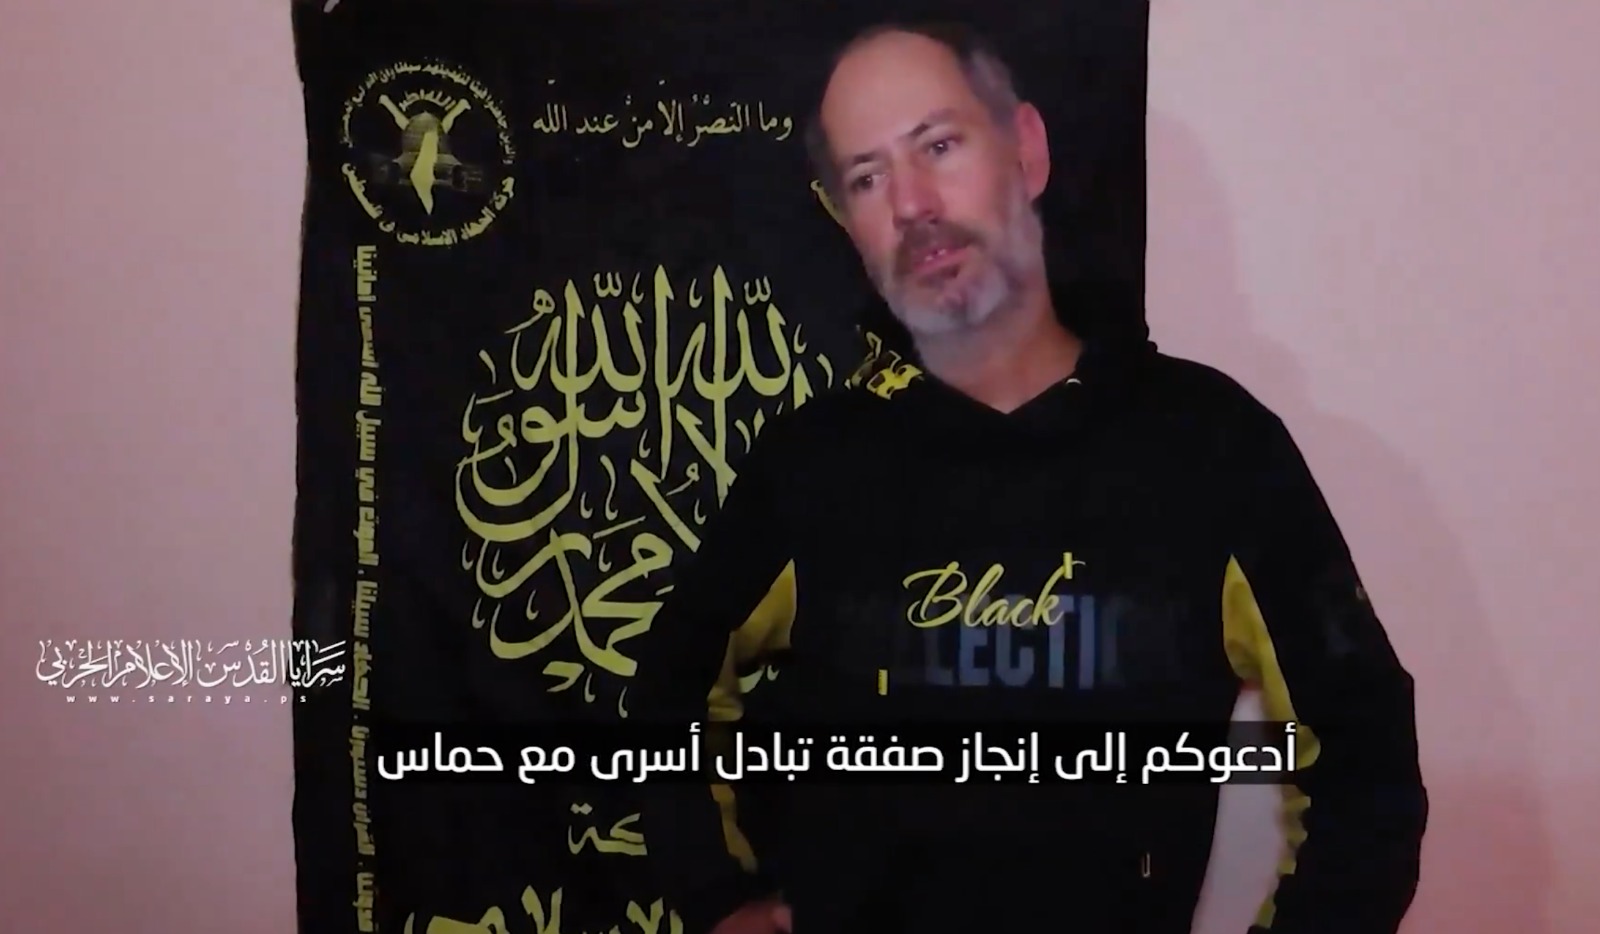 Lundi soir, les Brigades Al-Quds, la branche militaire du mouvement du Jihad islamique, ont publié un message vidéo du prisonnier sioniste Elad Katzir détenu sous leur garde.